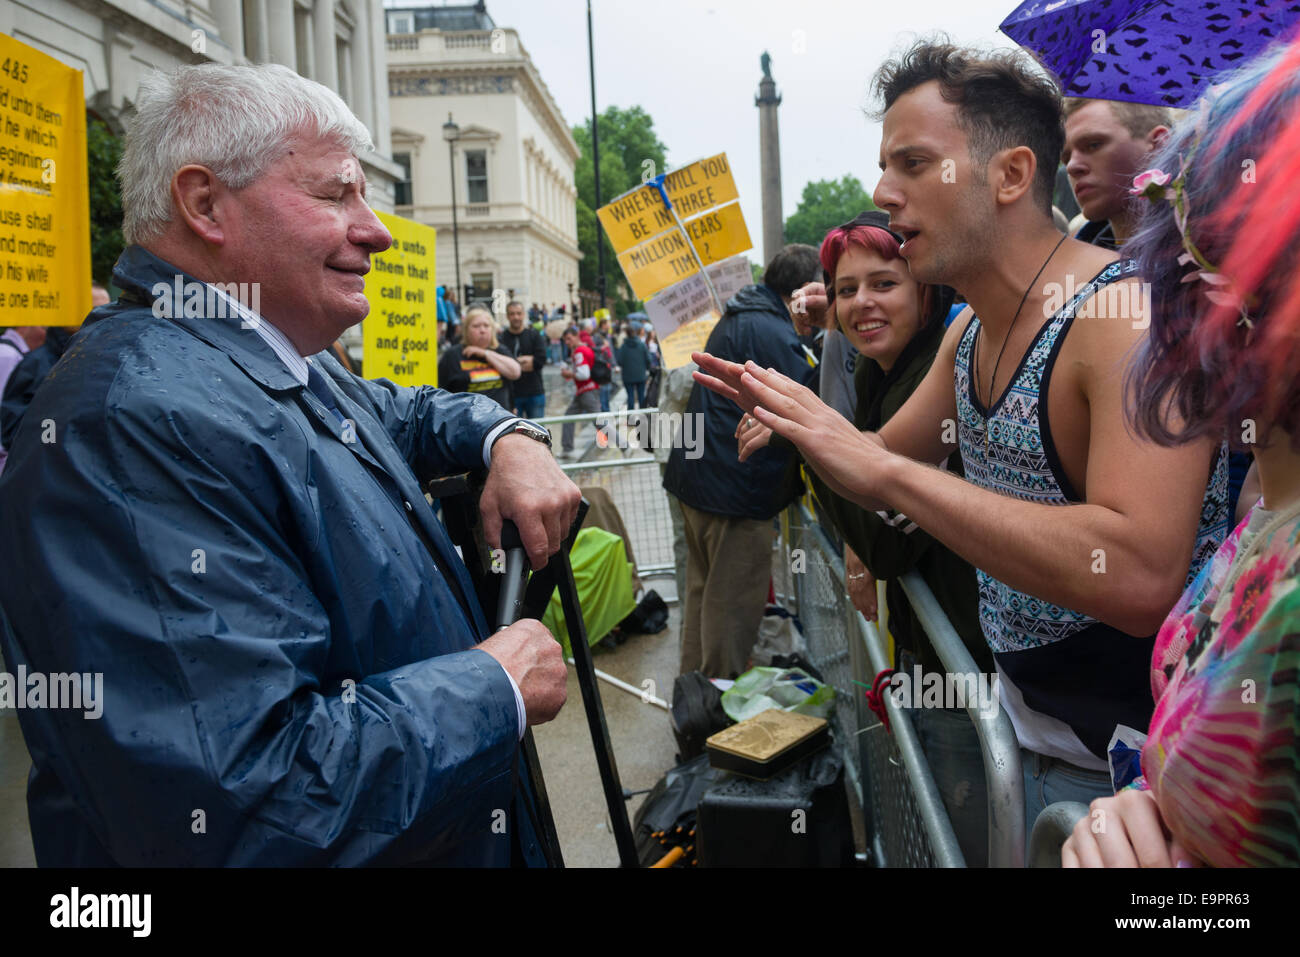 Demonstranten auf der Pride in London Parade 2014 Streit mit einer Gruppe von christlichen Anti-Homosexuell Demonstranten auf Waterloo Place, London, England Stockfoto